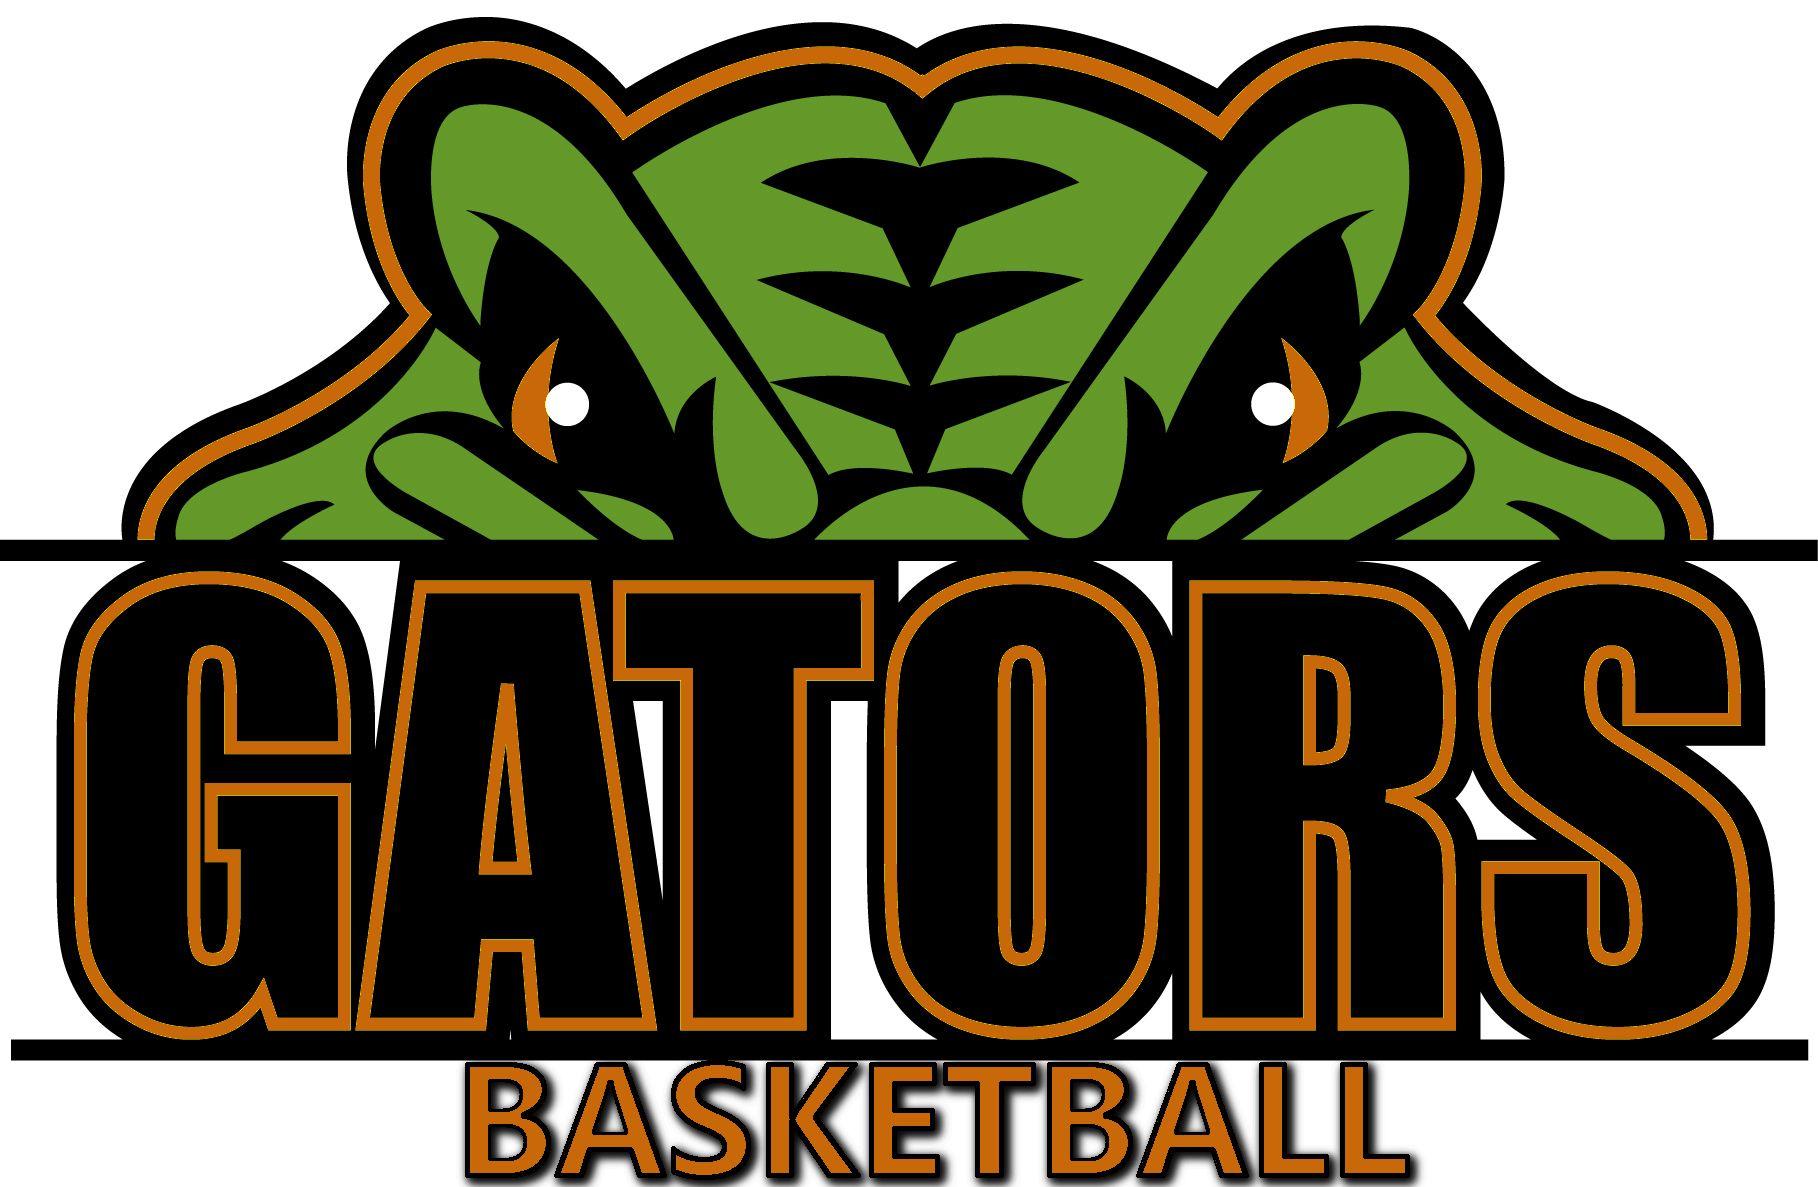 Gator Basketball Logo  LogoDix